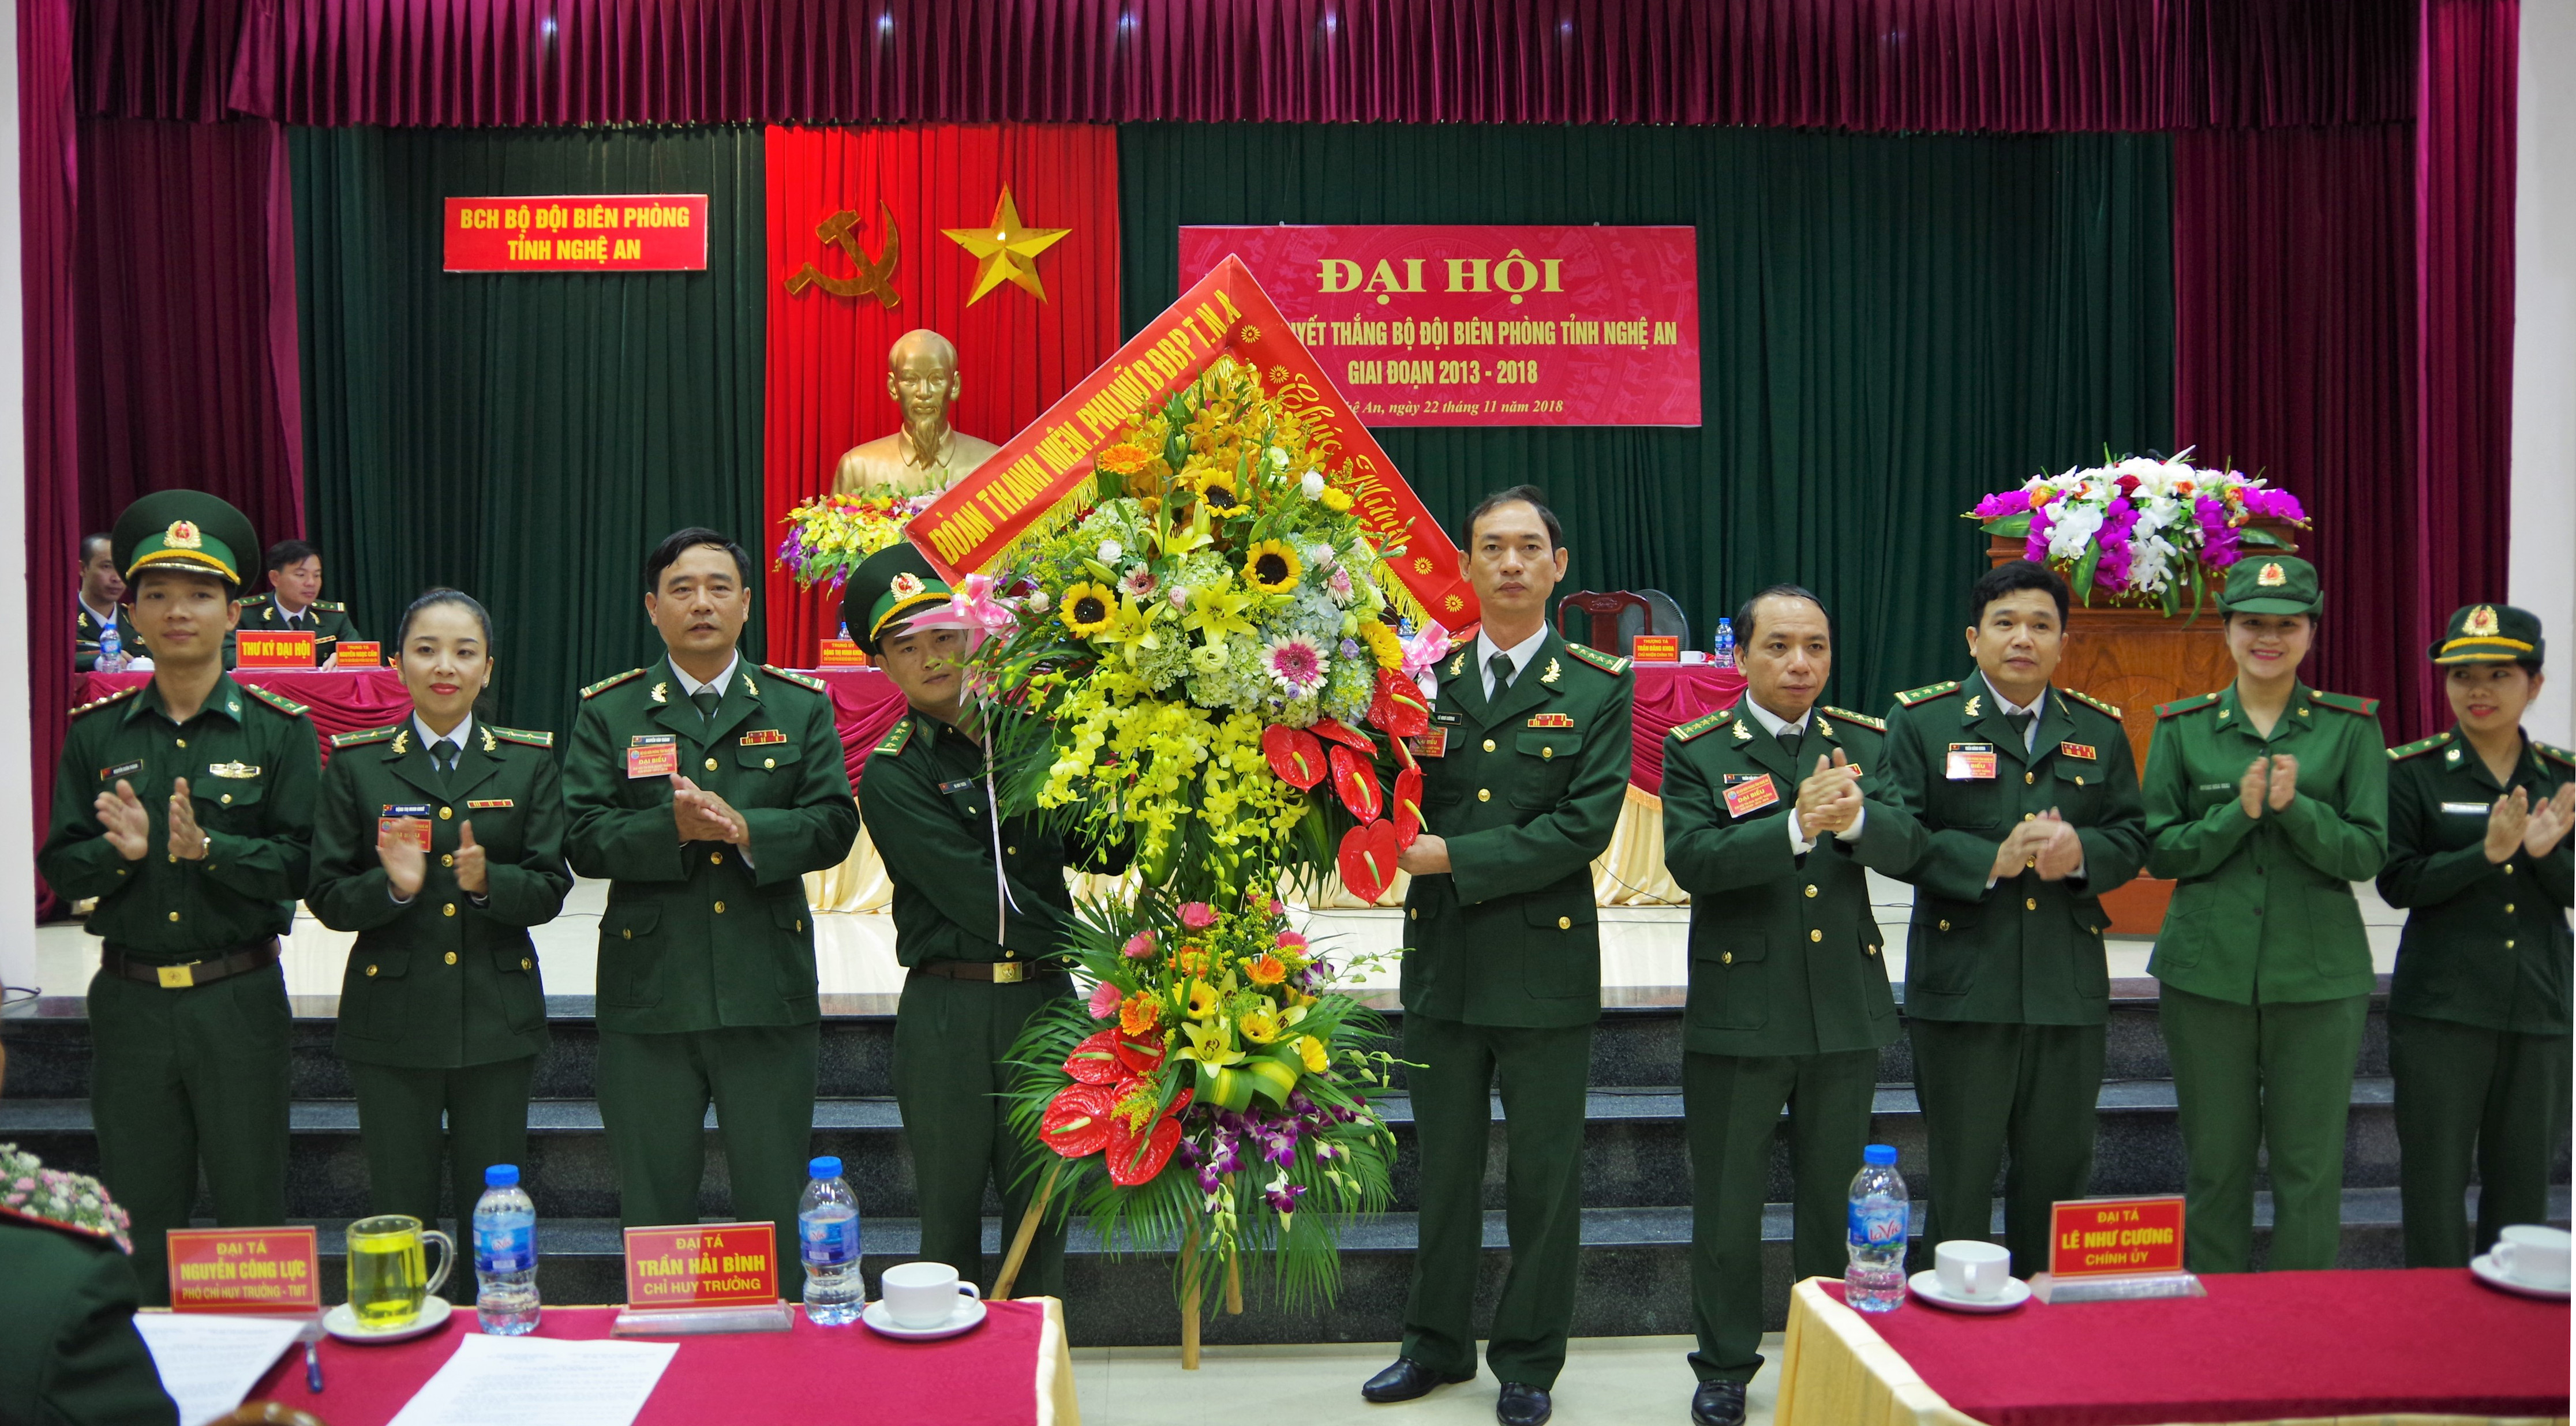 Đoàn Thanh niên, Hội Phụ nữ BĐBP tỉnh tặng hoa chúc mừng Đại hội. Ảnh: Hùng Phong